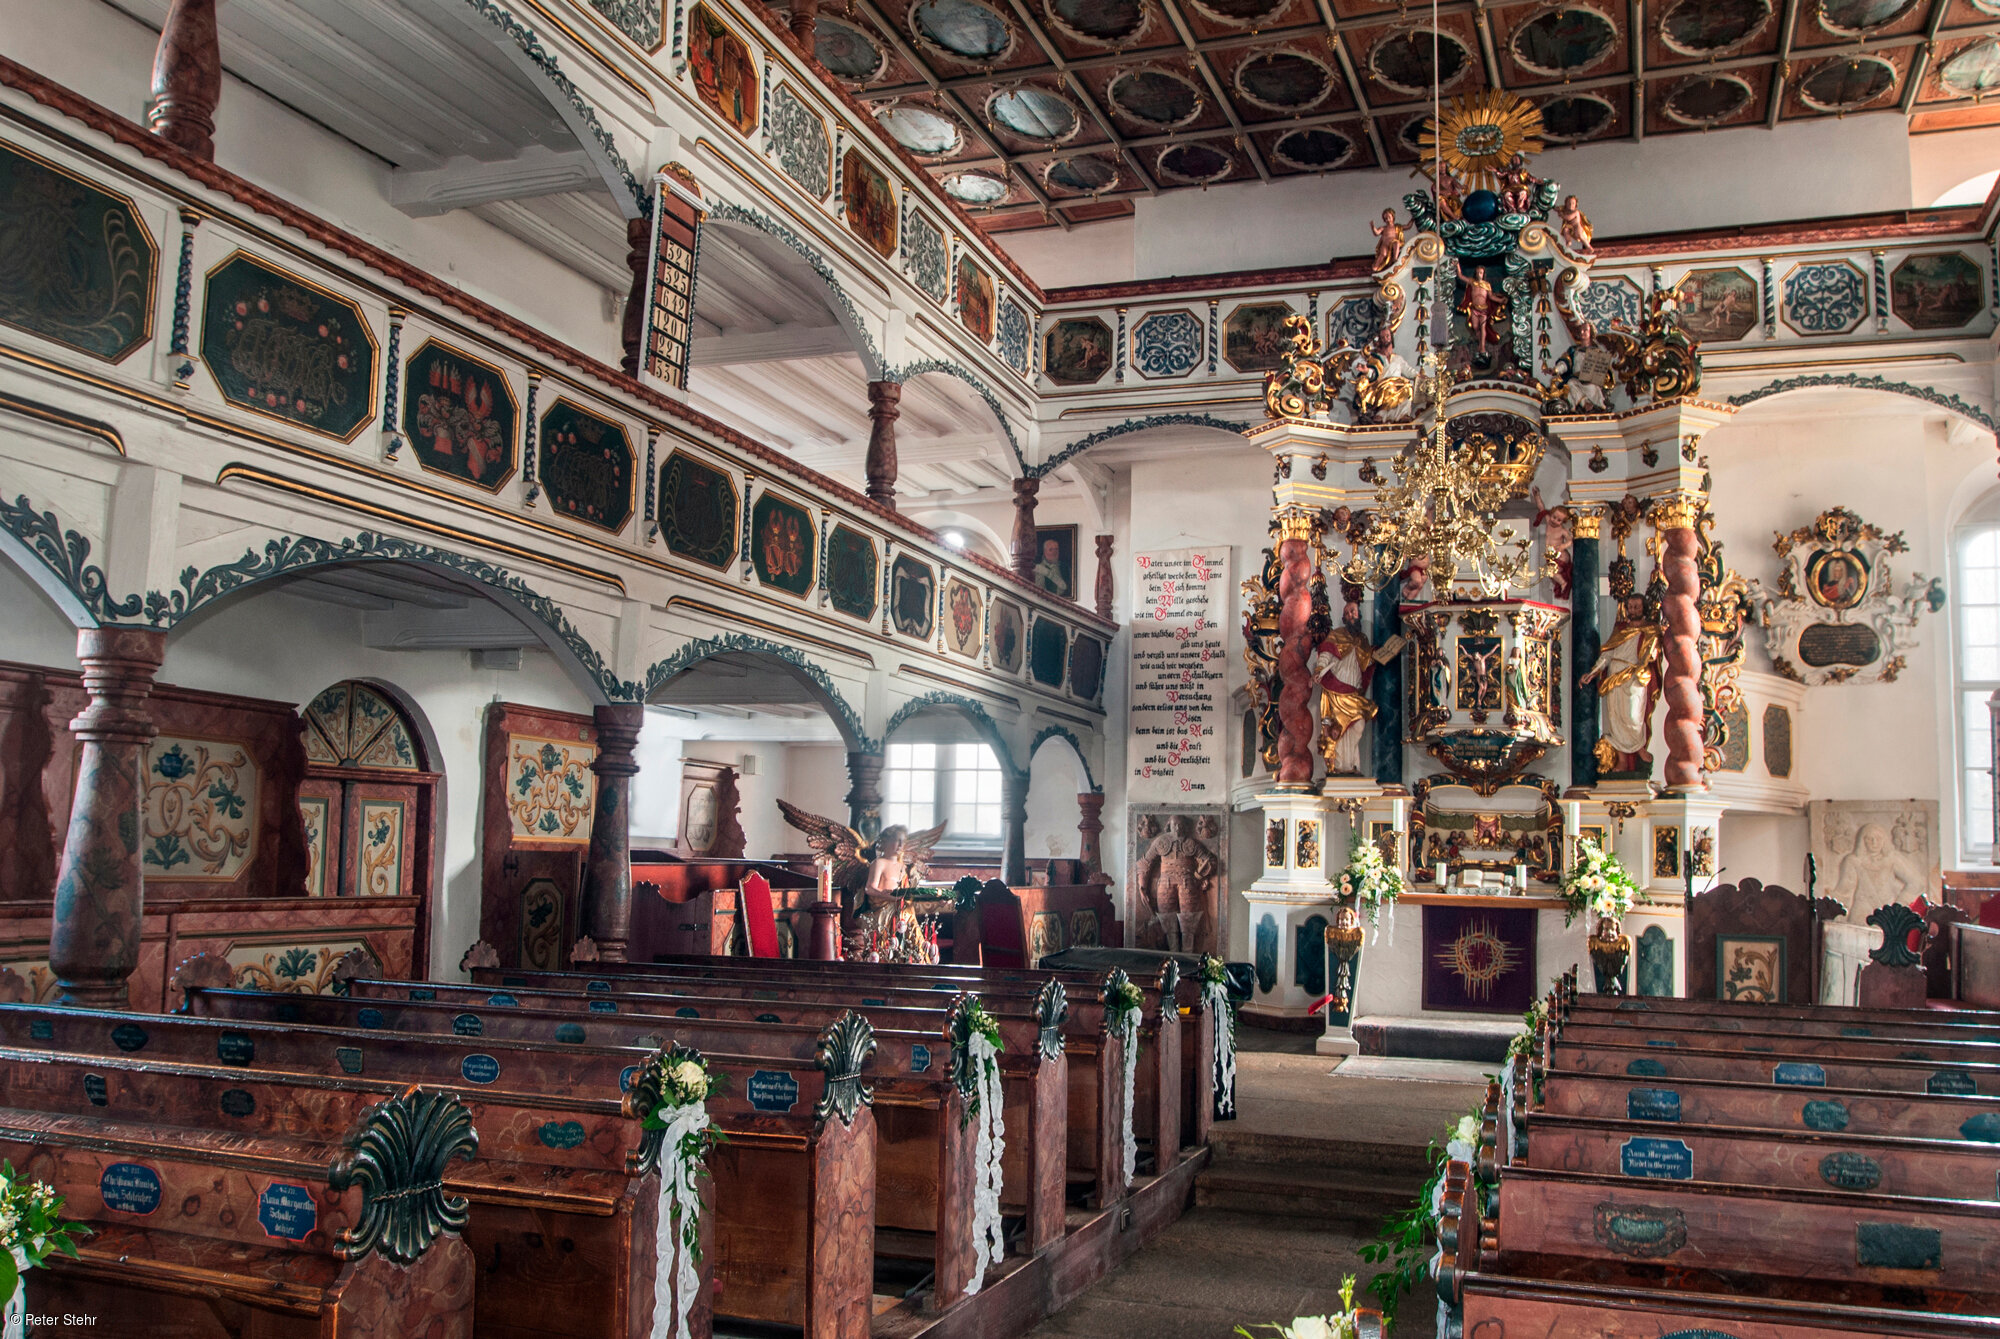 Innenansicht der Kirche (Regnitzlosau, Fichtelgebirge)